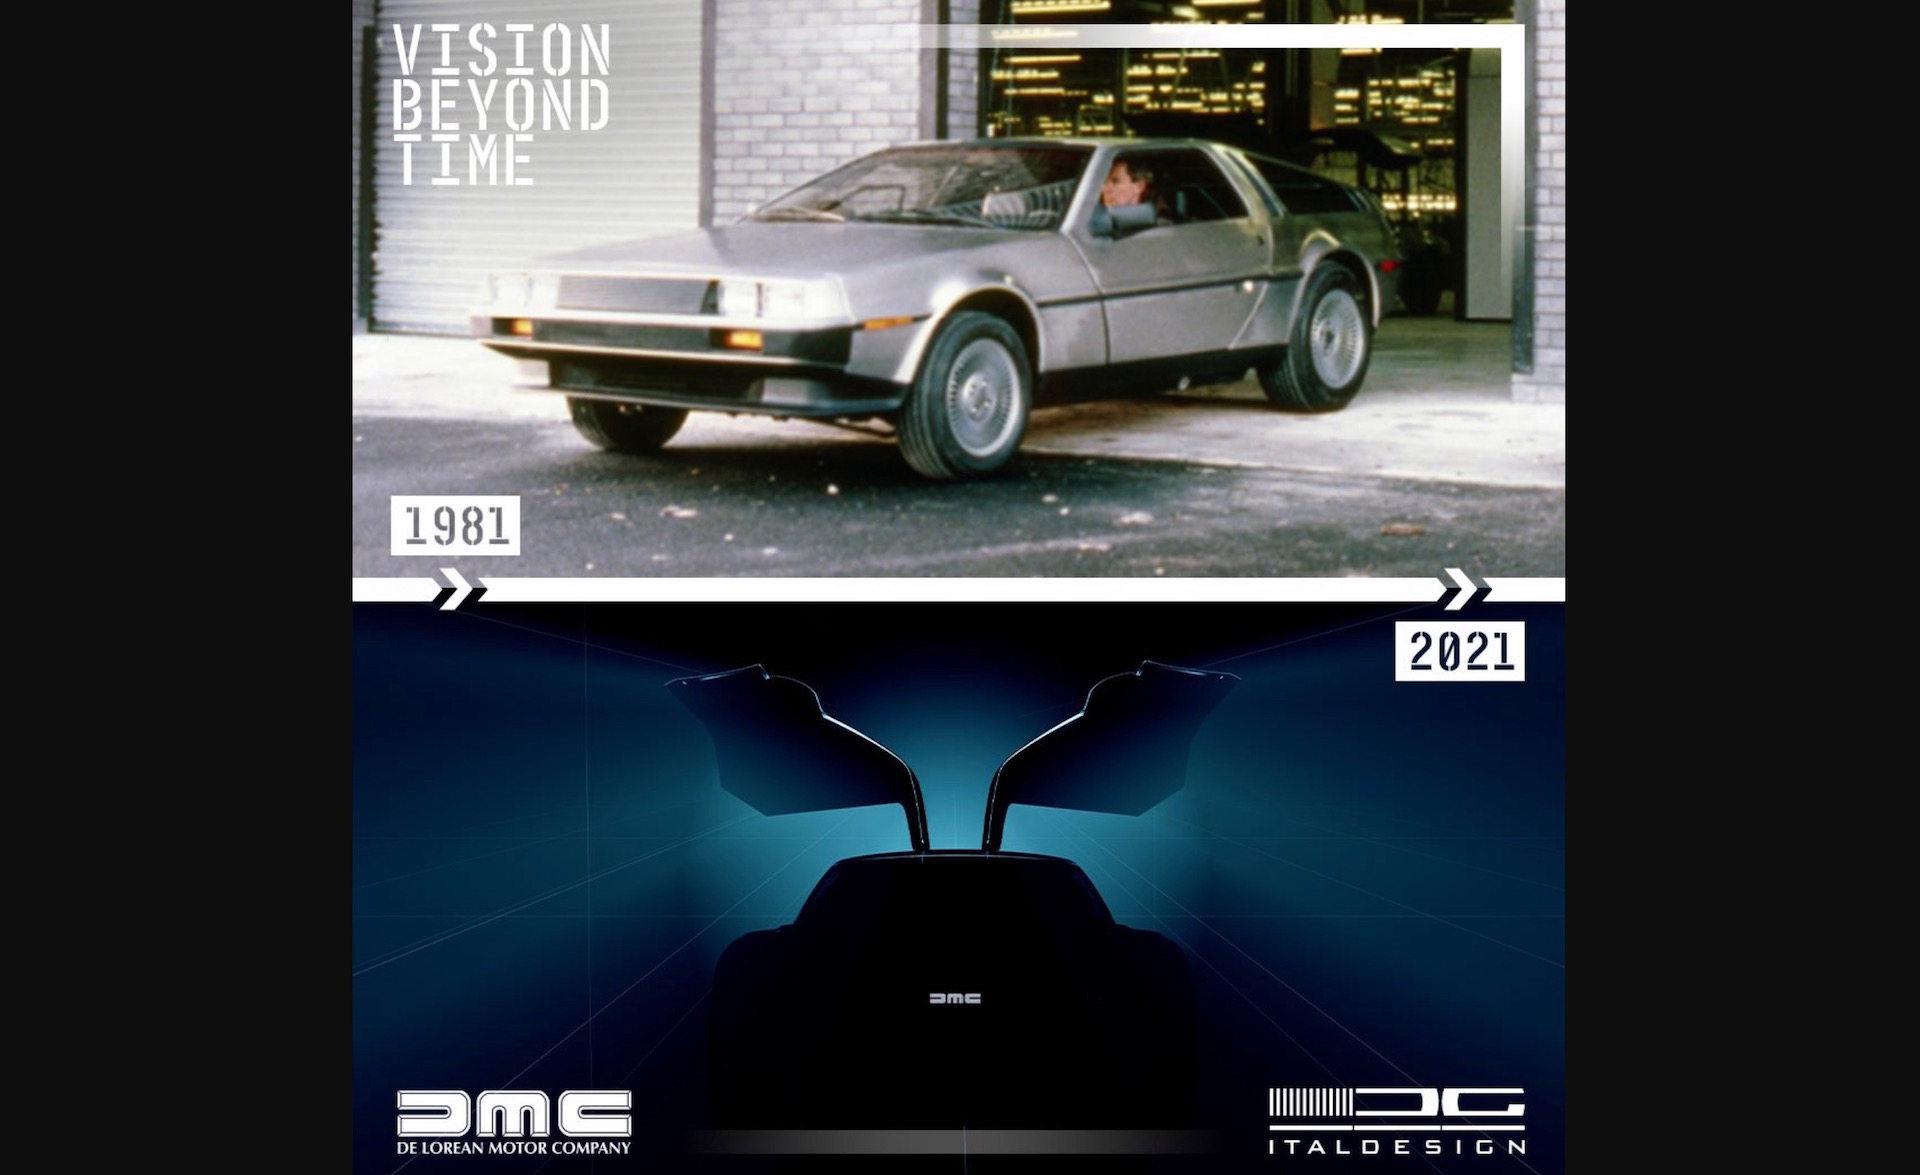 Italdesign creates modern DeLorean, celebrates 40th anniversary